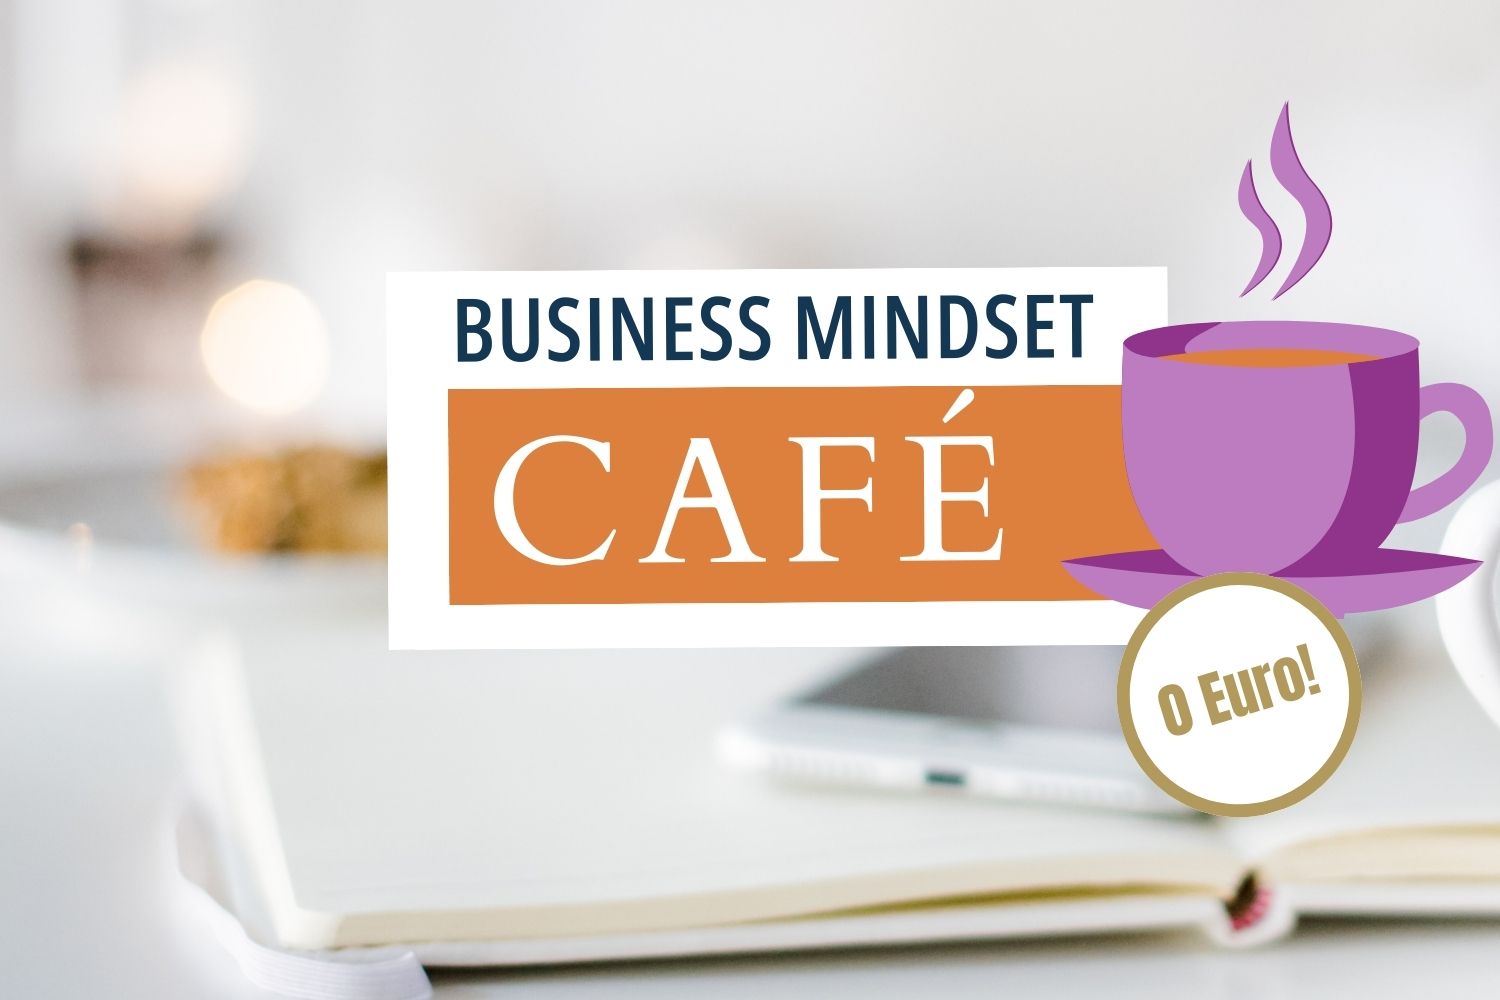 Business Mindset Cafe